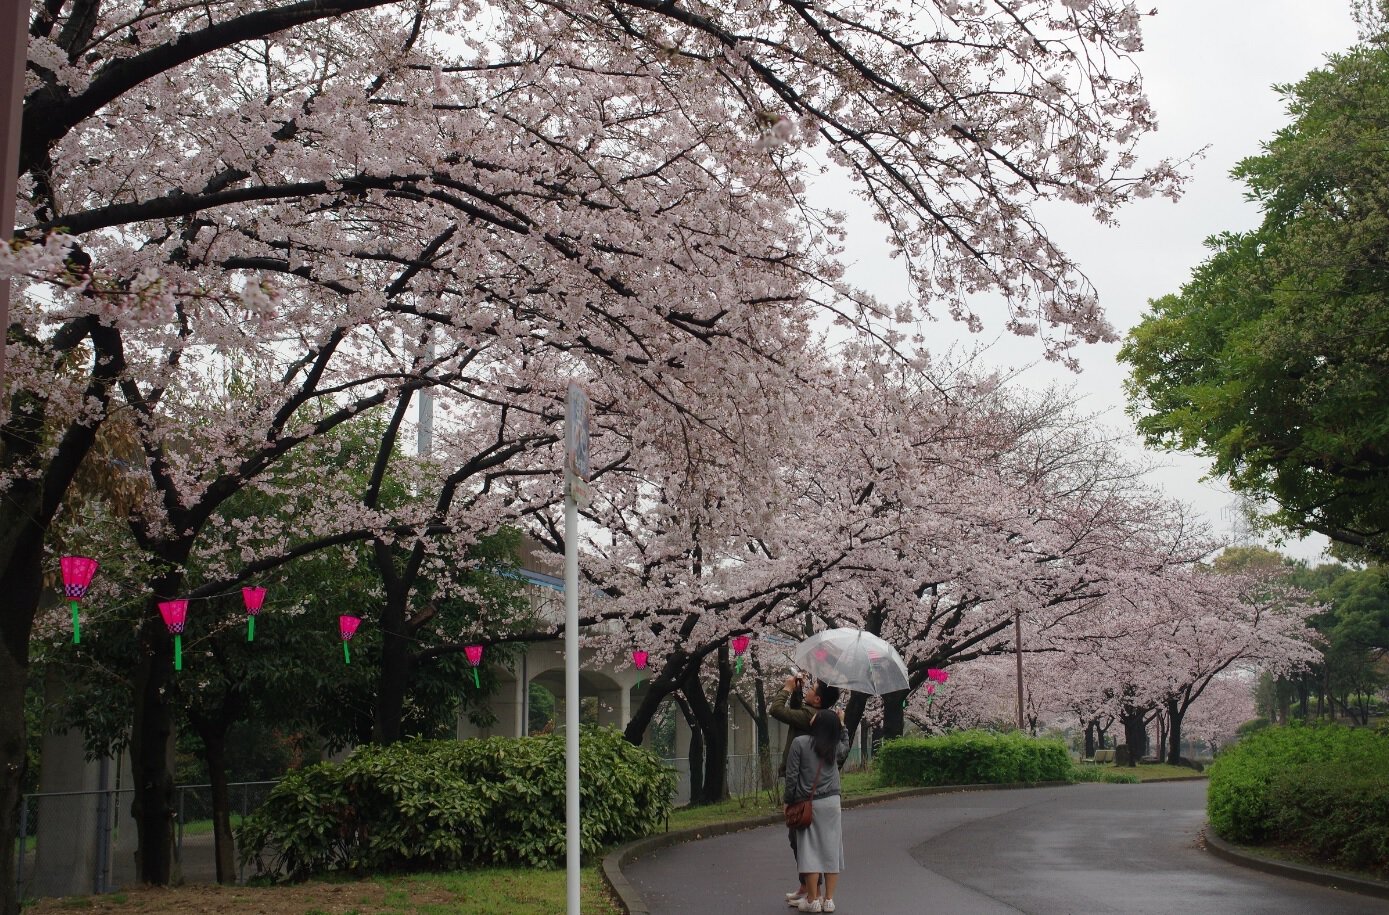 荒子川公園の桜 桜名所 お花見21 ウォーカープラス